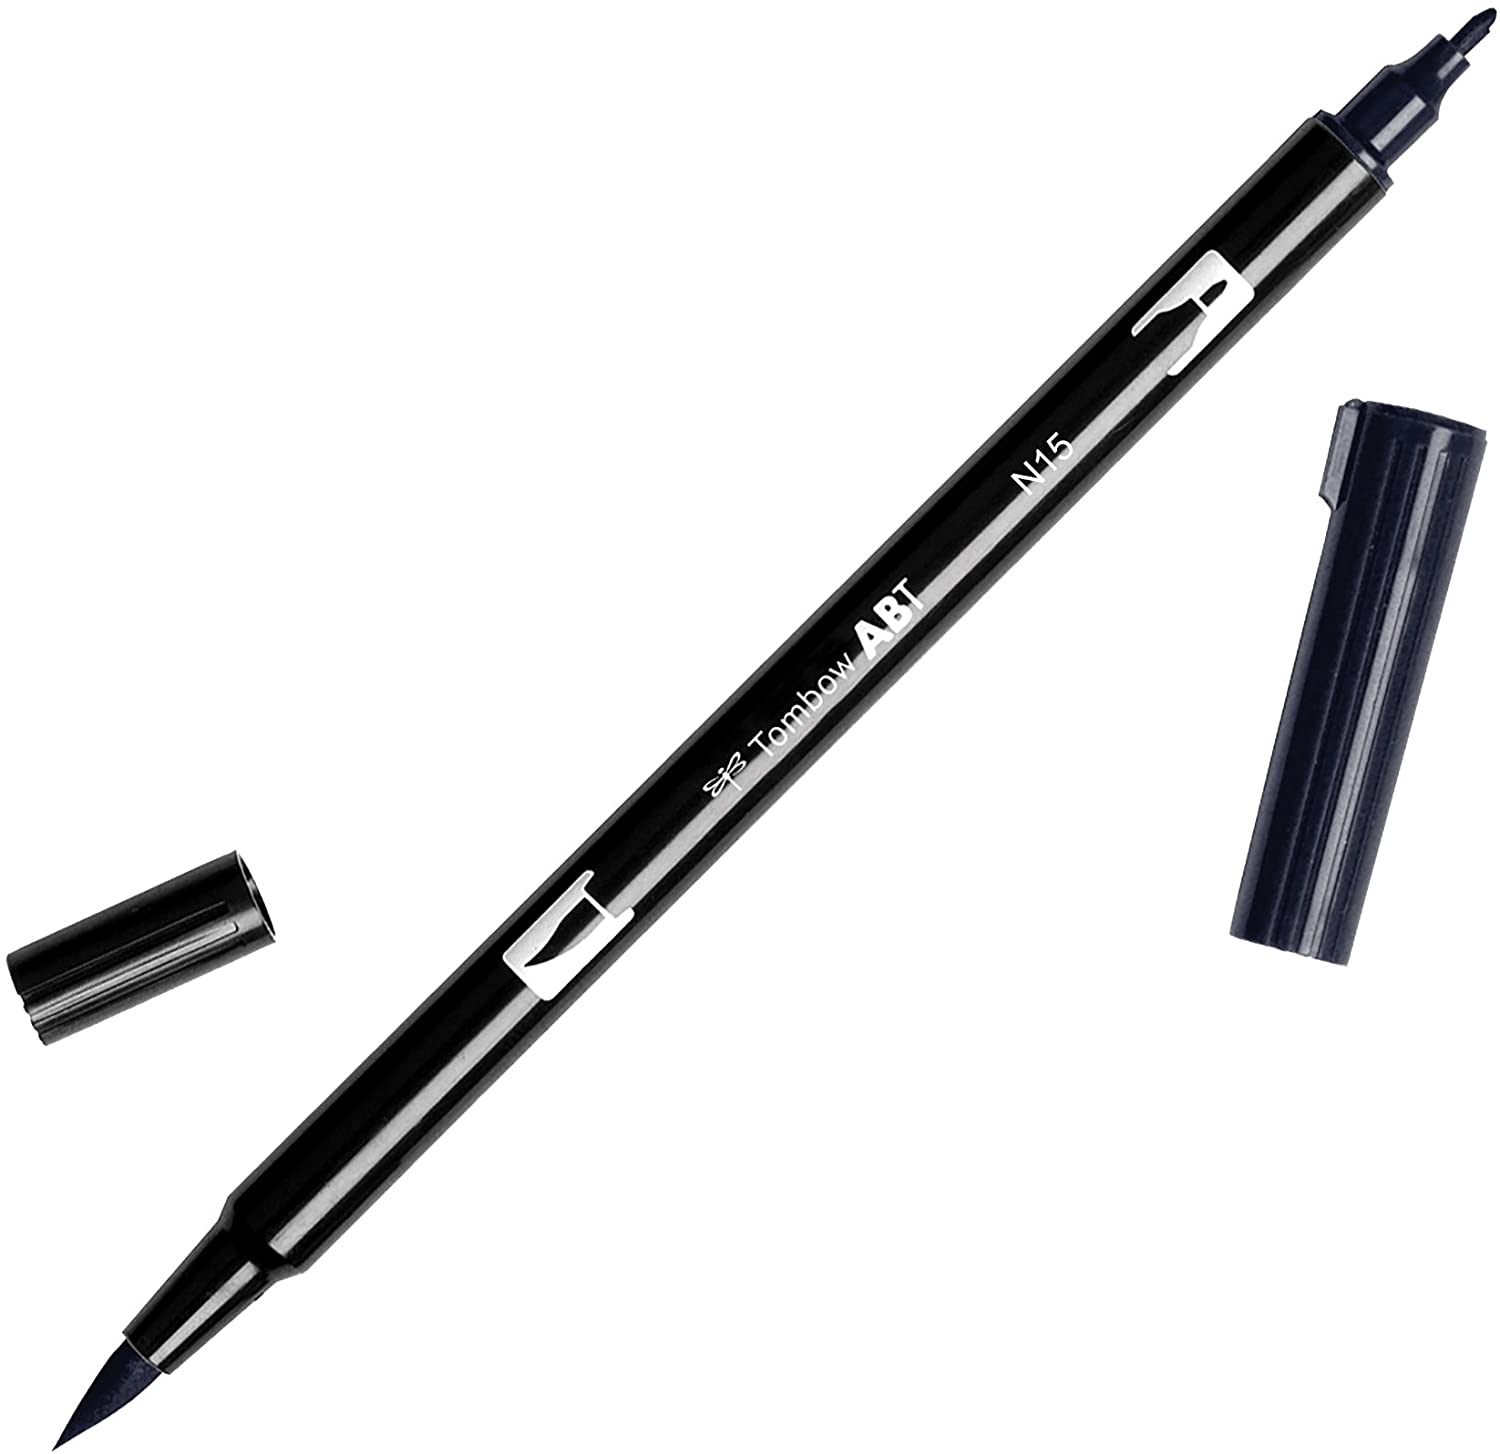 Tombow 56621 Dual Brush Pen, N15 - Black, Brush and Fine Tip Marker